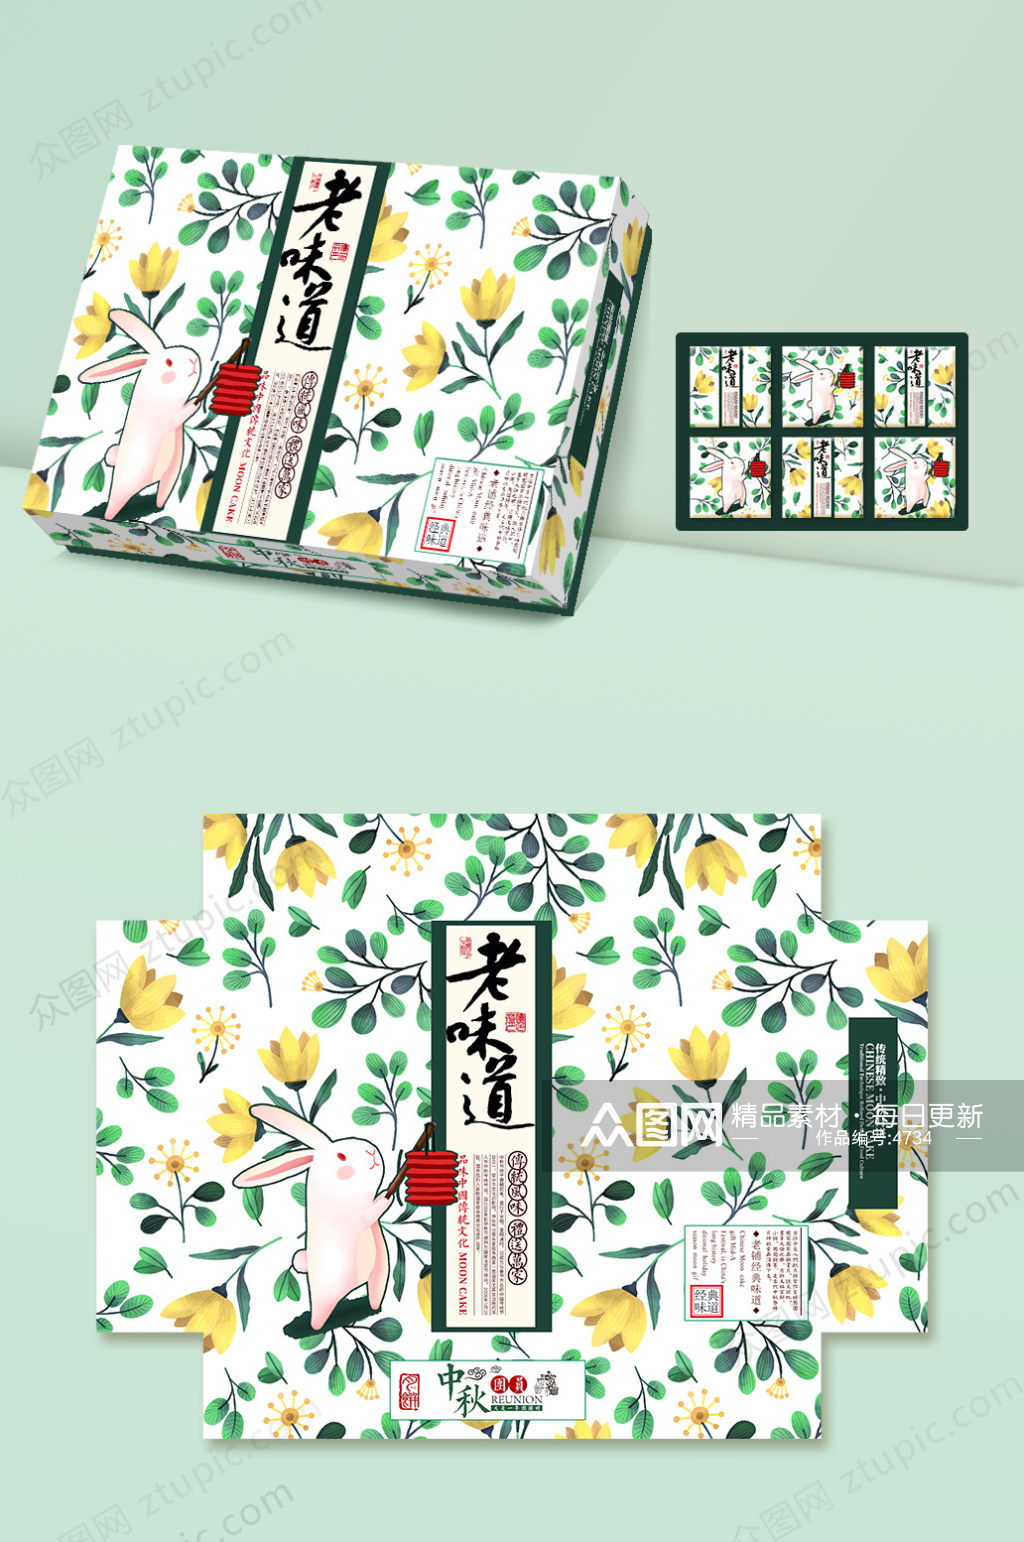 原创时尚手绘艺术包装盒设计中秋节 月饼盒设计素材